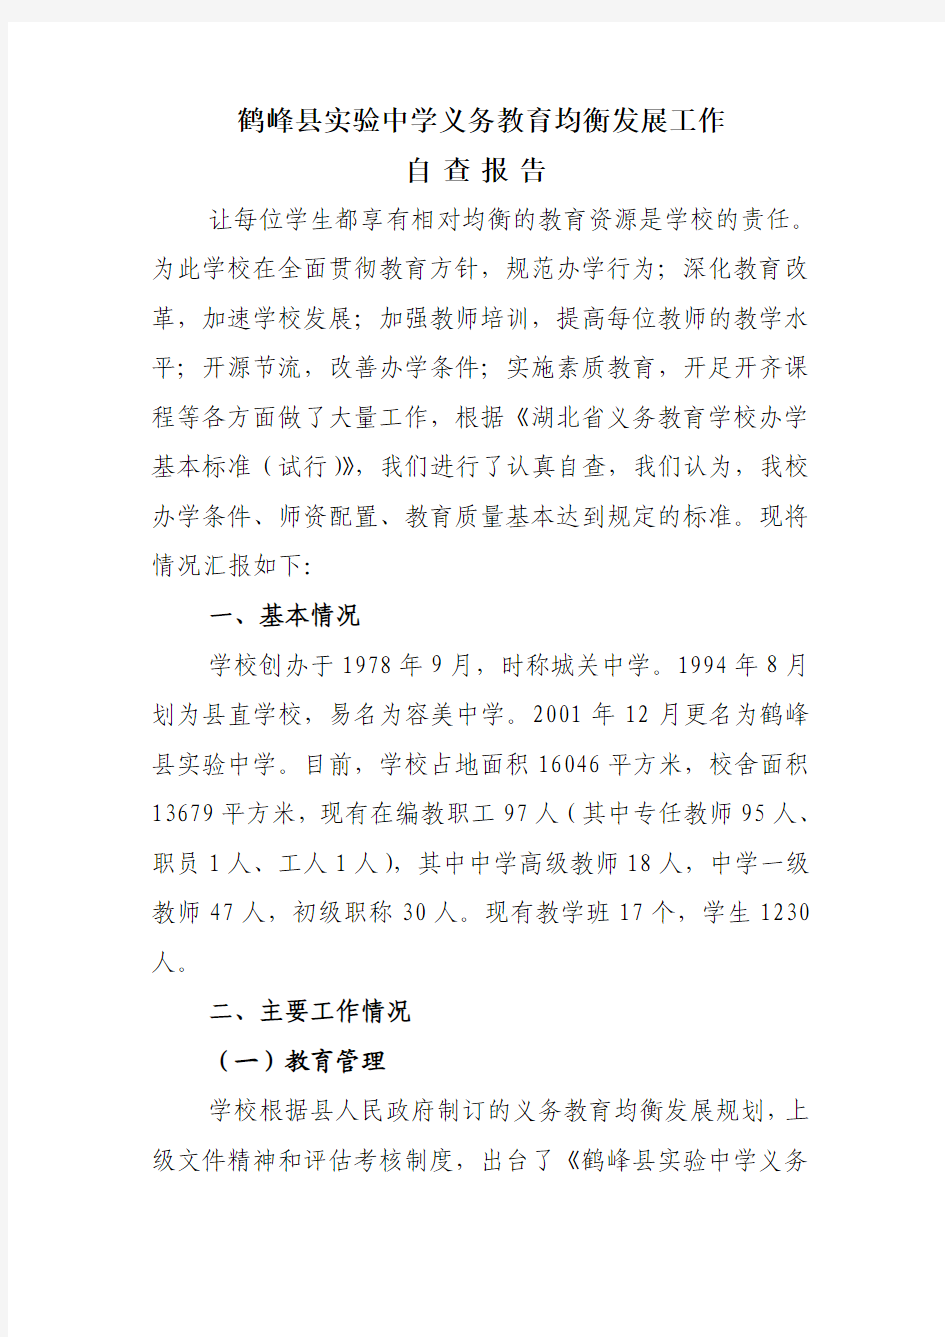 鹤峰县实验中学义务教育均衡发展自查报告